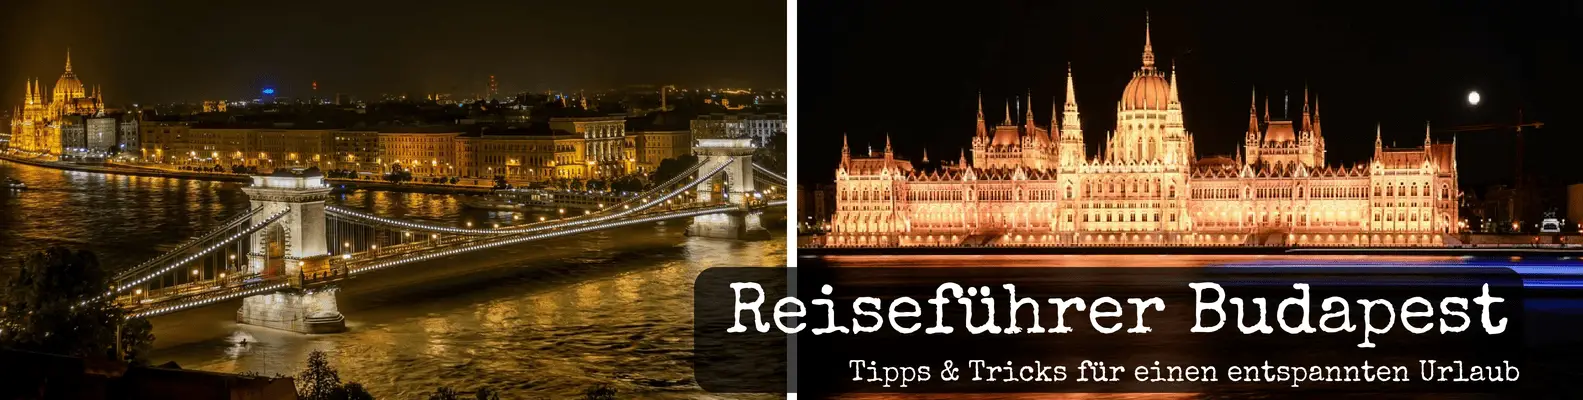 Reiseführer Budapest - Tipps und Tricks für den Budapest Urlaub